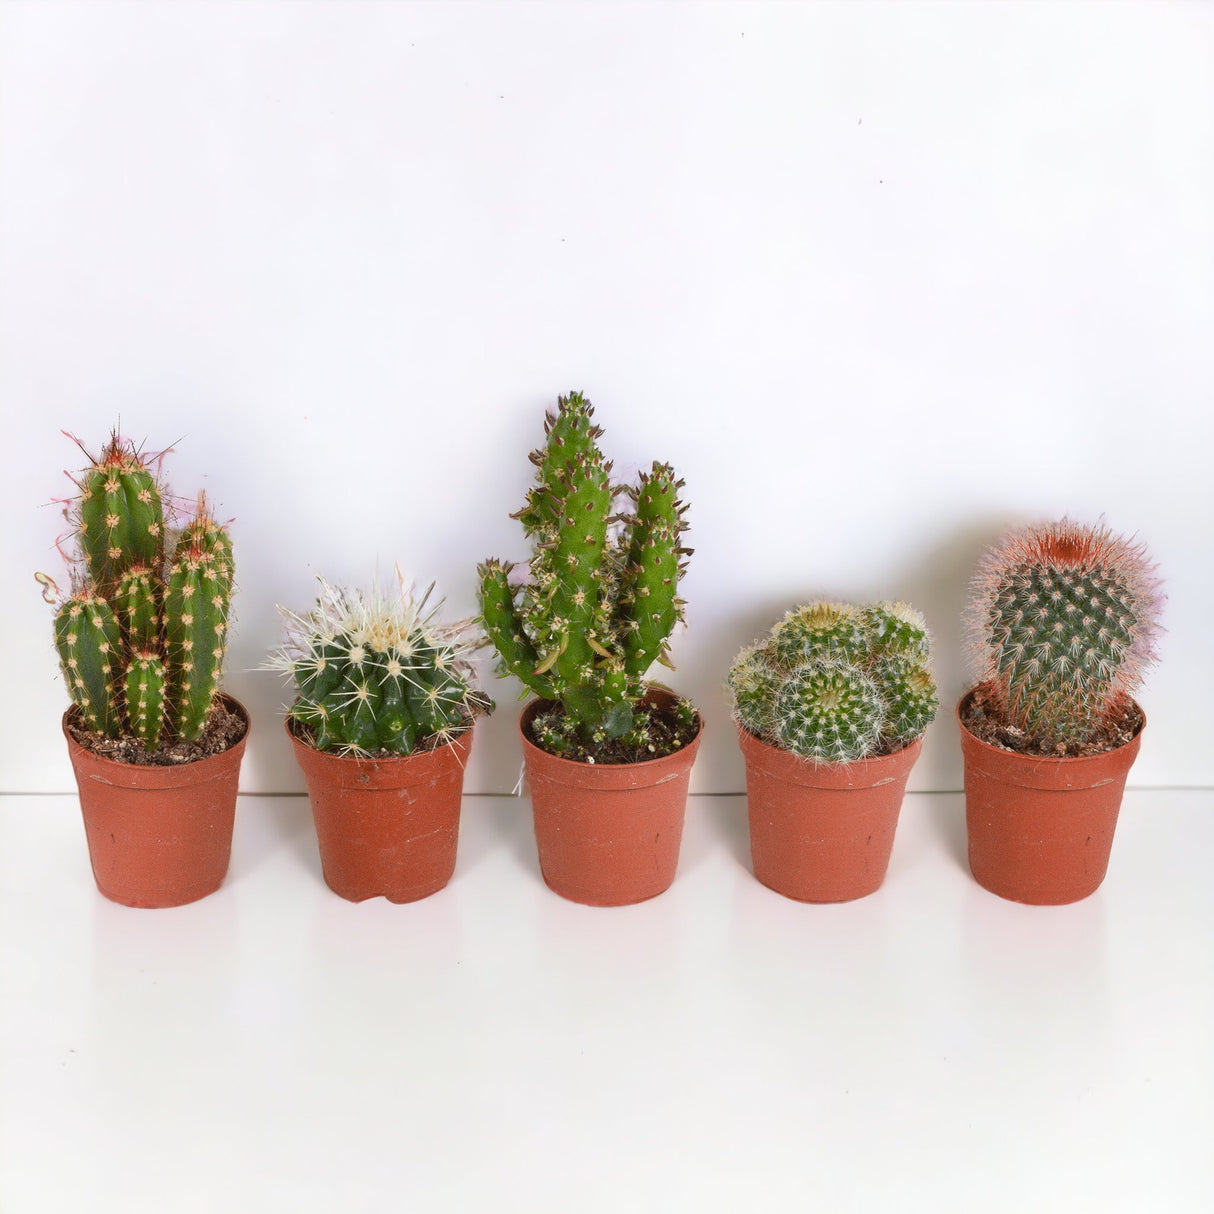 Caja de cactus, suculentas - Juego de 15 plantas, h13cm